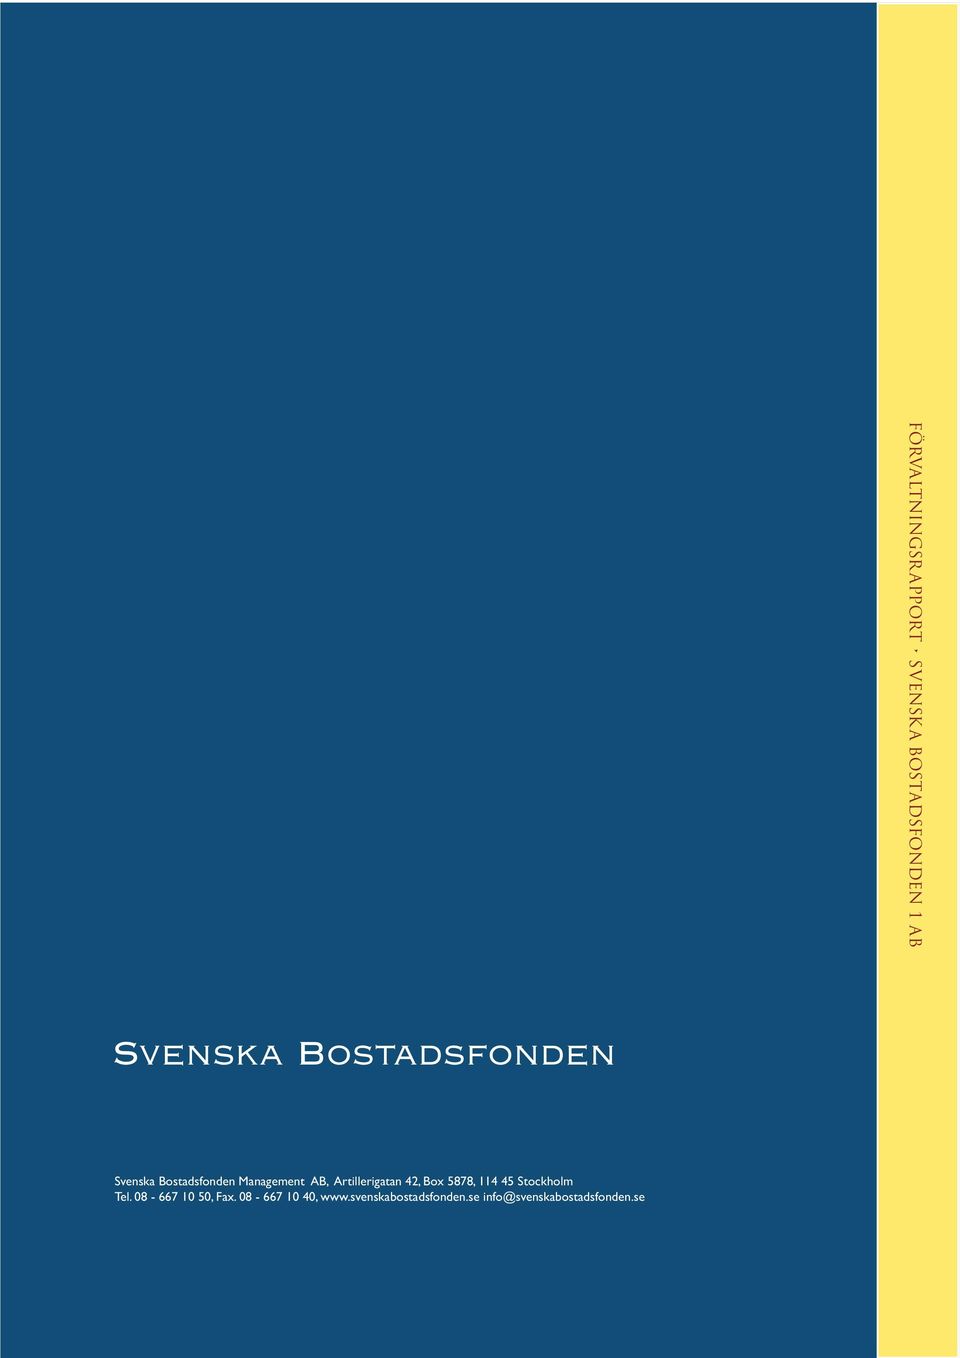 08-667 10 40, www.svenskabostadsfonden.